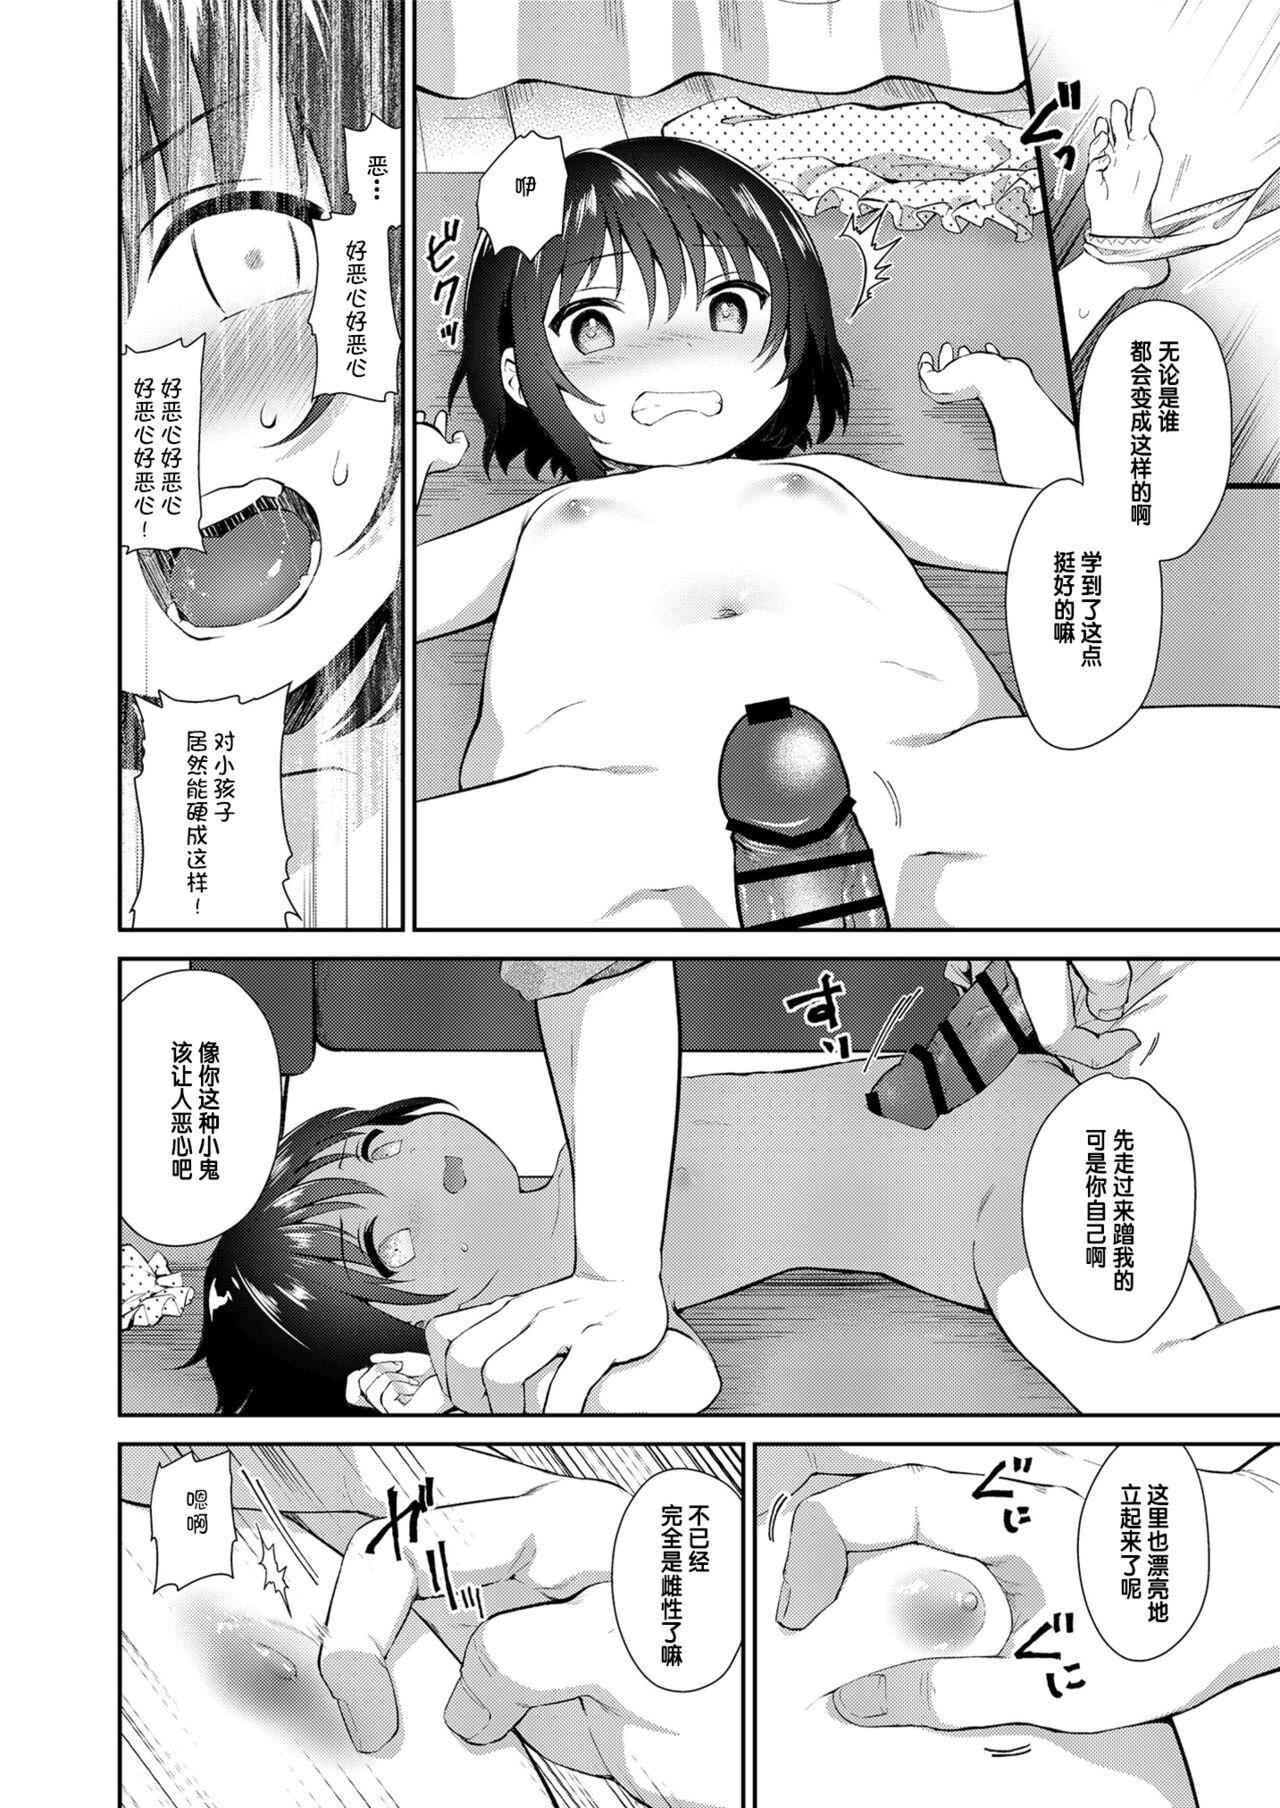 Titfuck Meigawaruikarashikatanai. - Original Punheta - Page 8